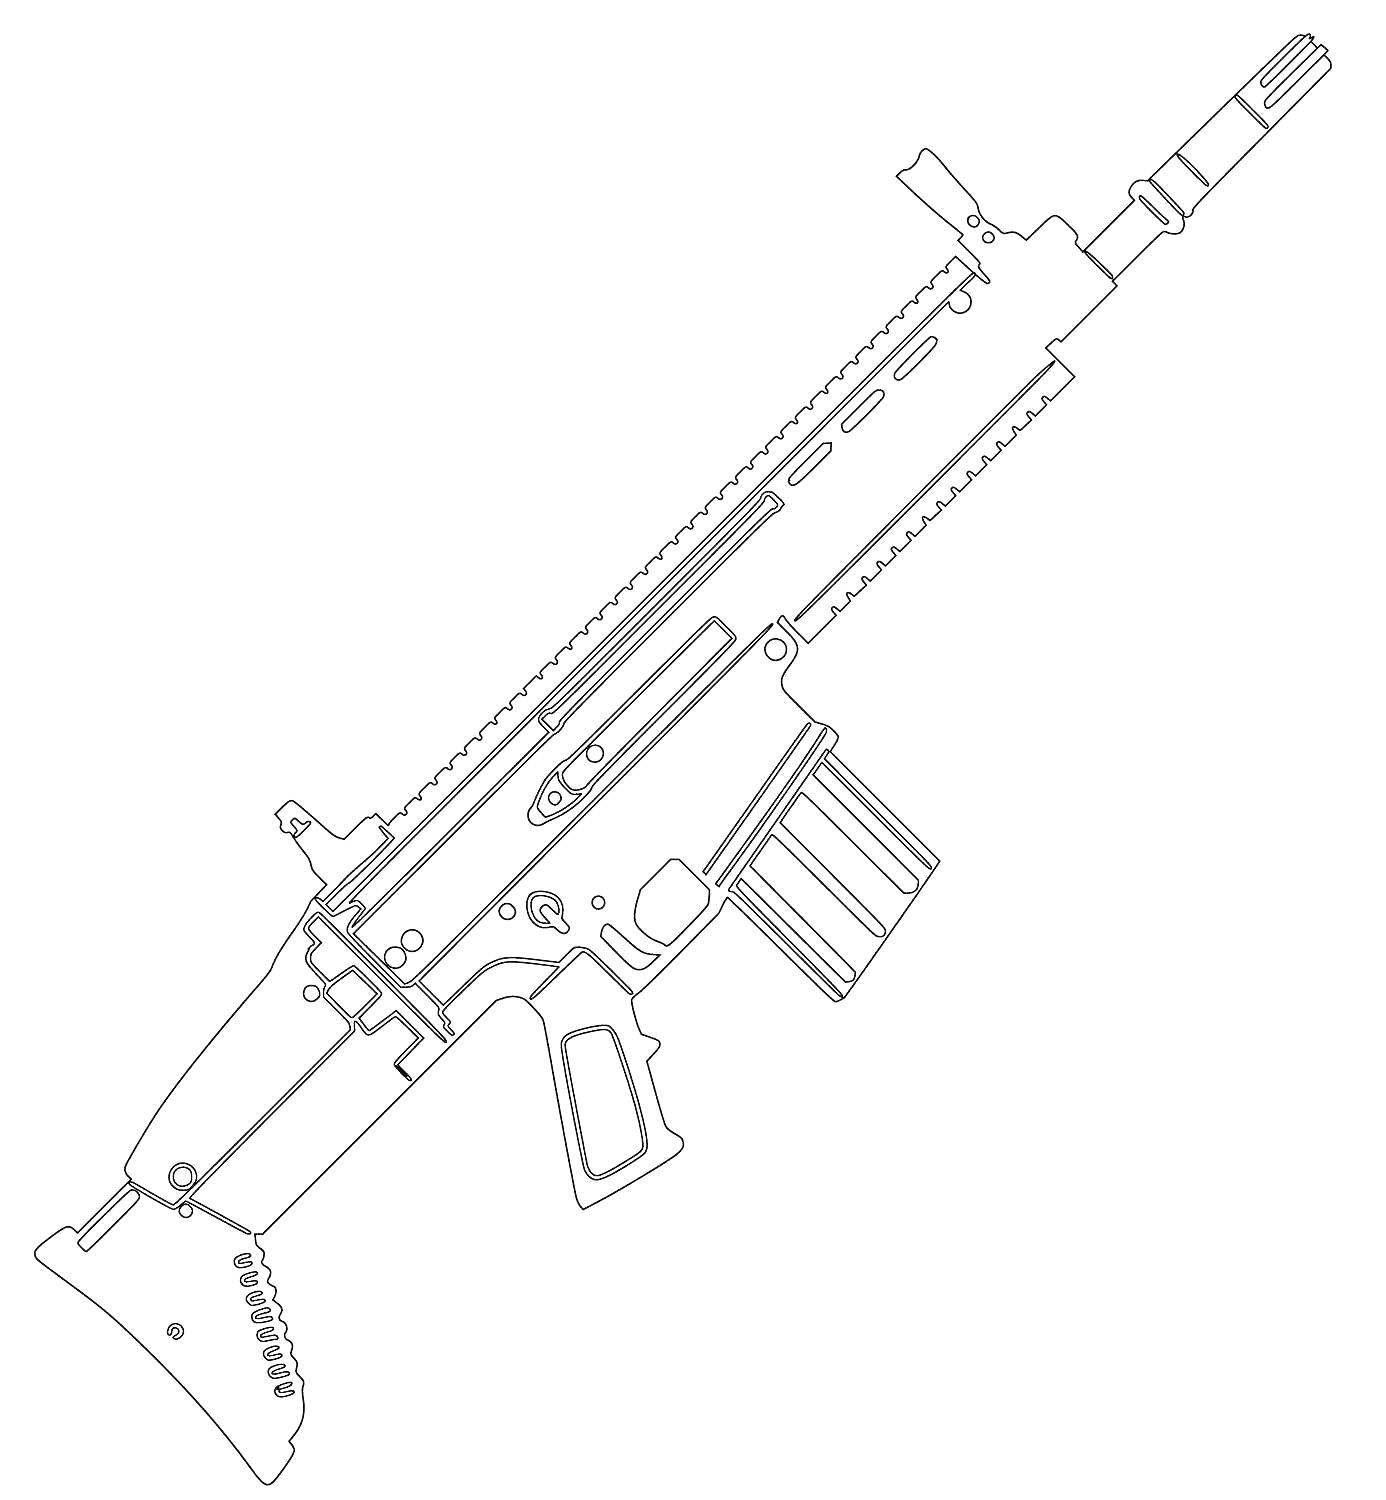 Раскраска Штурмовая винтовка с планкой Пикатинни и коробчатым магазином